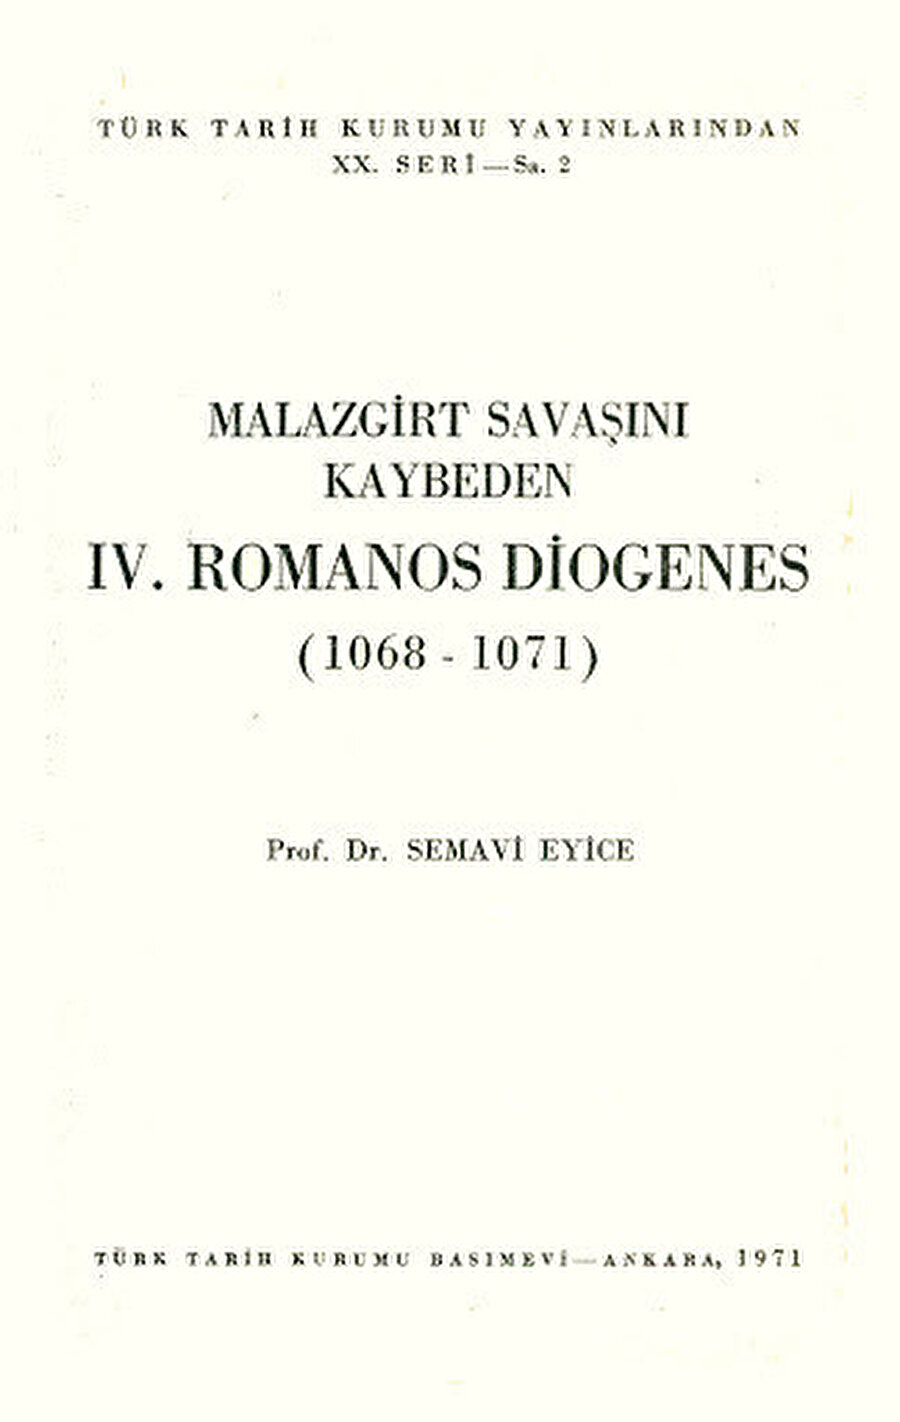 Türkiye’nin en önemli simaları arasında yer alıyordu. Alp Arslan ile Malazgirt Savaşı’nı yapan Bizans İmparatoru IV. Romanos Diogenes ile ilgili Türkçede yayımlanmış tek eserin Semavi Eyice’ye ait olduğunu da burada hatırlatmak isterim.